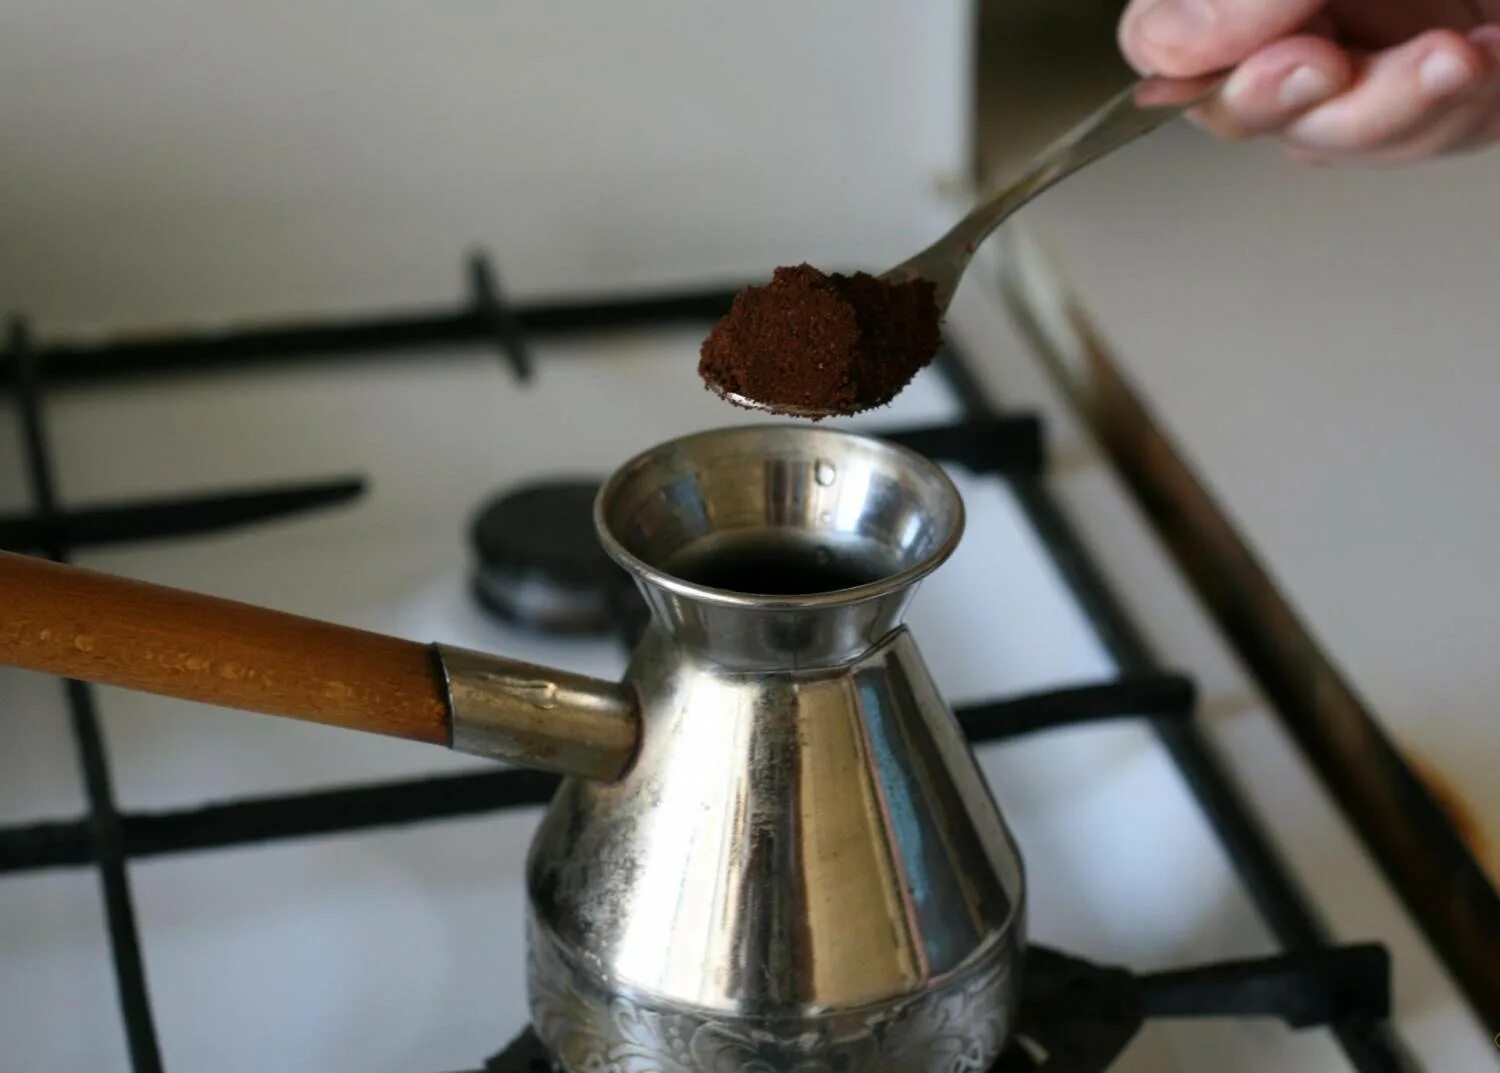 Турка на плите. Кофе в турке. Турка для кофе. Турка с кофе на плите. Как делать домашнее кофе